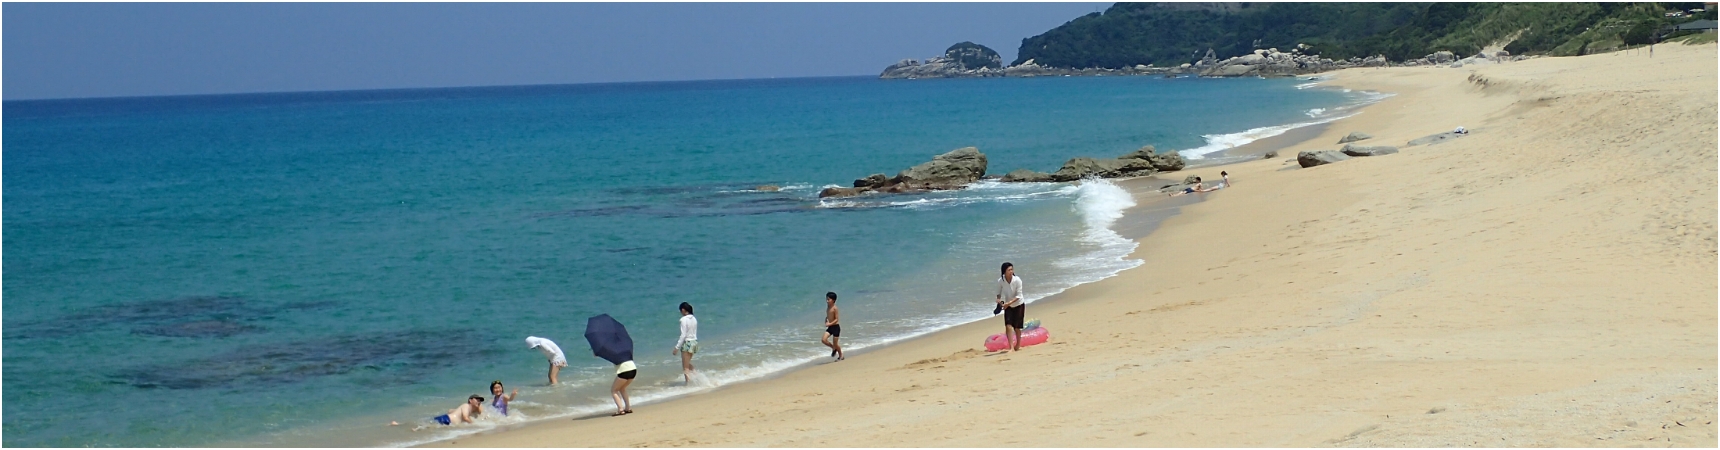 青い海と砂浜が美しい永田浜の写真。数名の人たちが、海水浴を楽しんでいます。